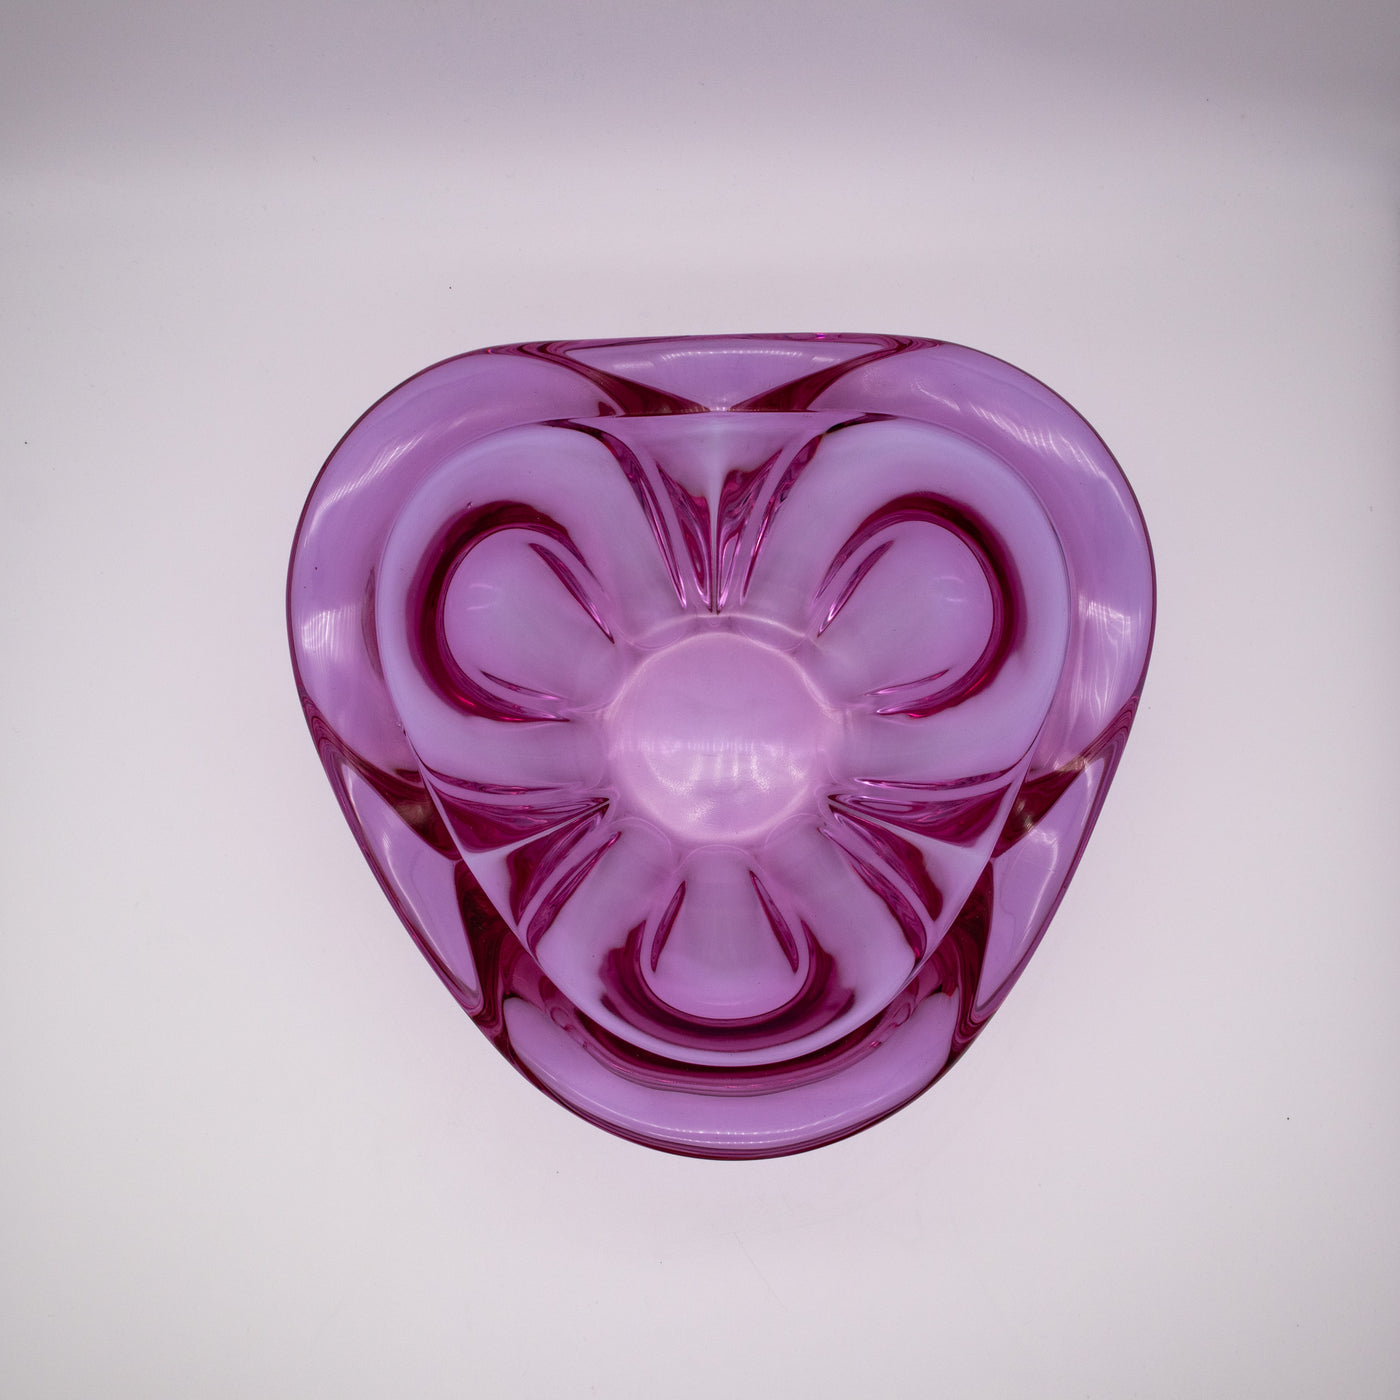 Glasschale lila von oben fotografiert